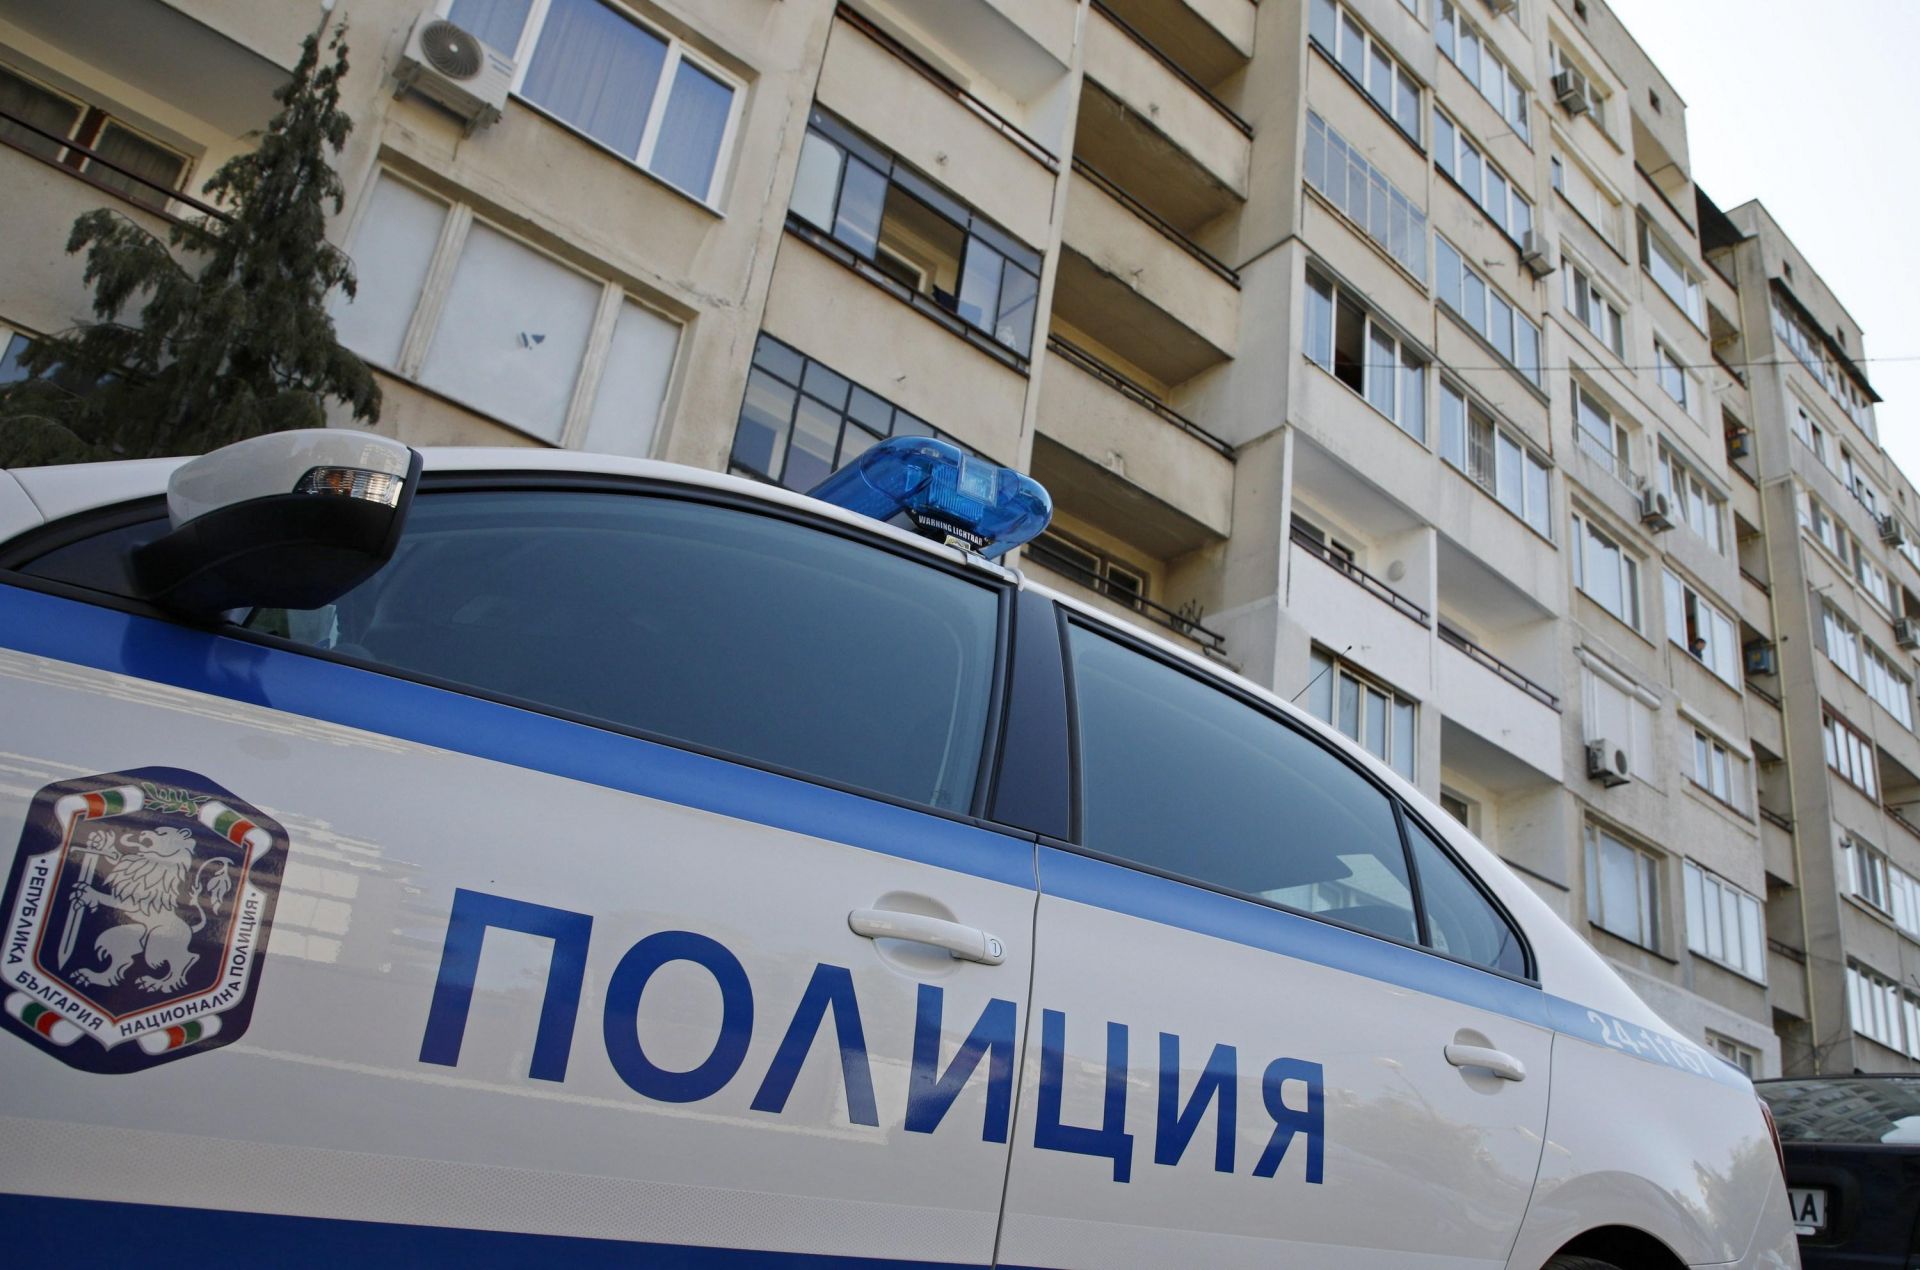 Командоси и полицаи изведоха 57 годишния мъж, баракадирал се в жилището си в кв. Овча Купел в София